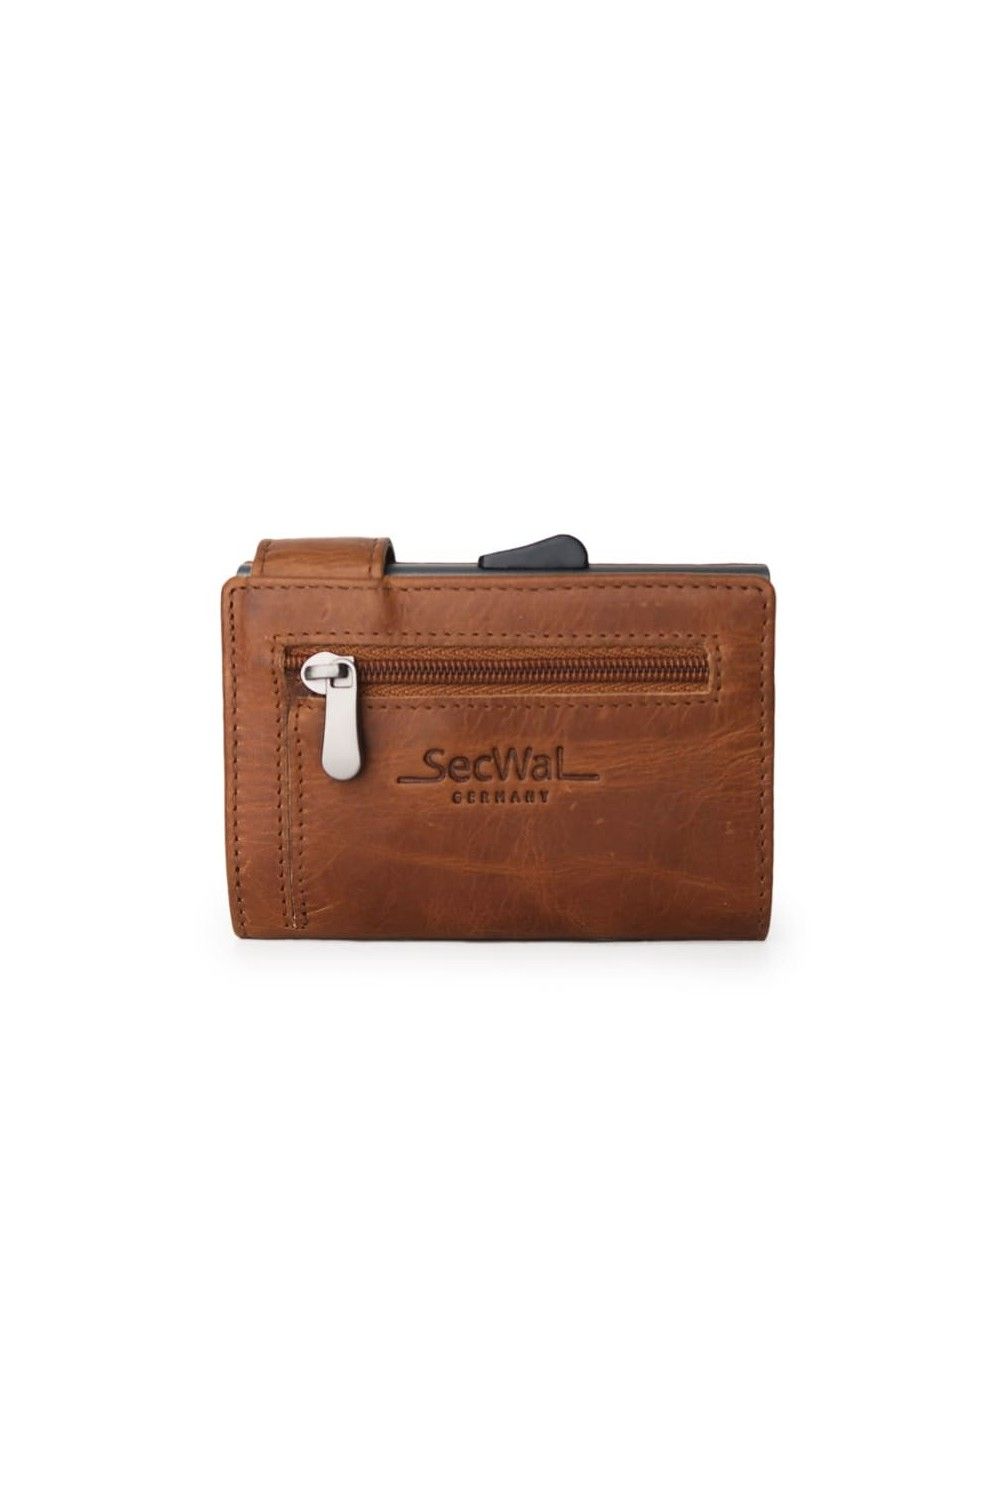 SecWal Card Case XL RV Leather Cognac